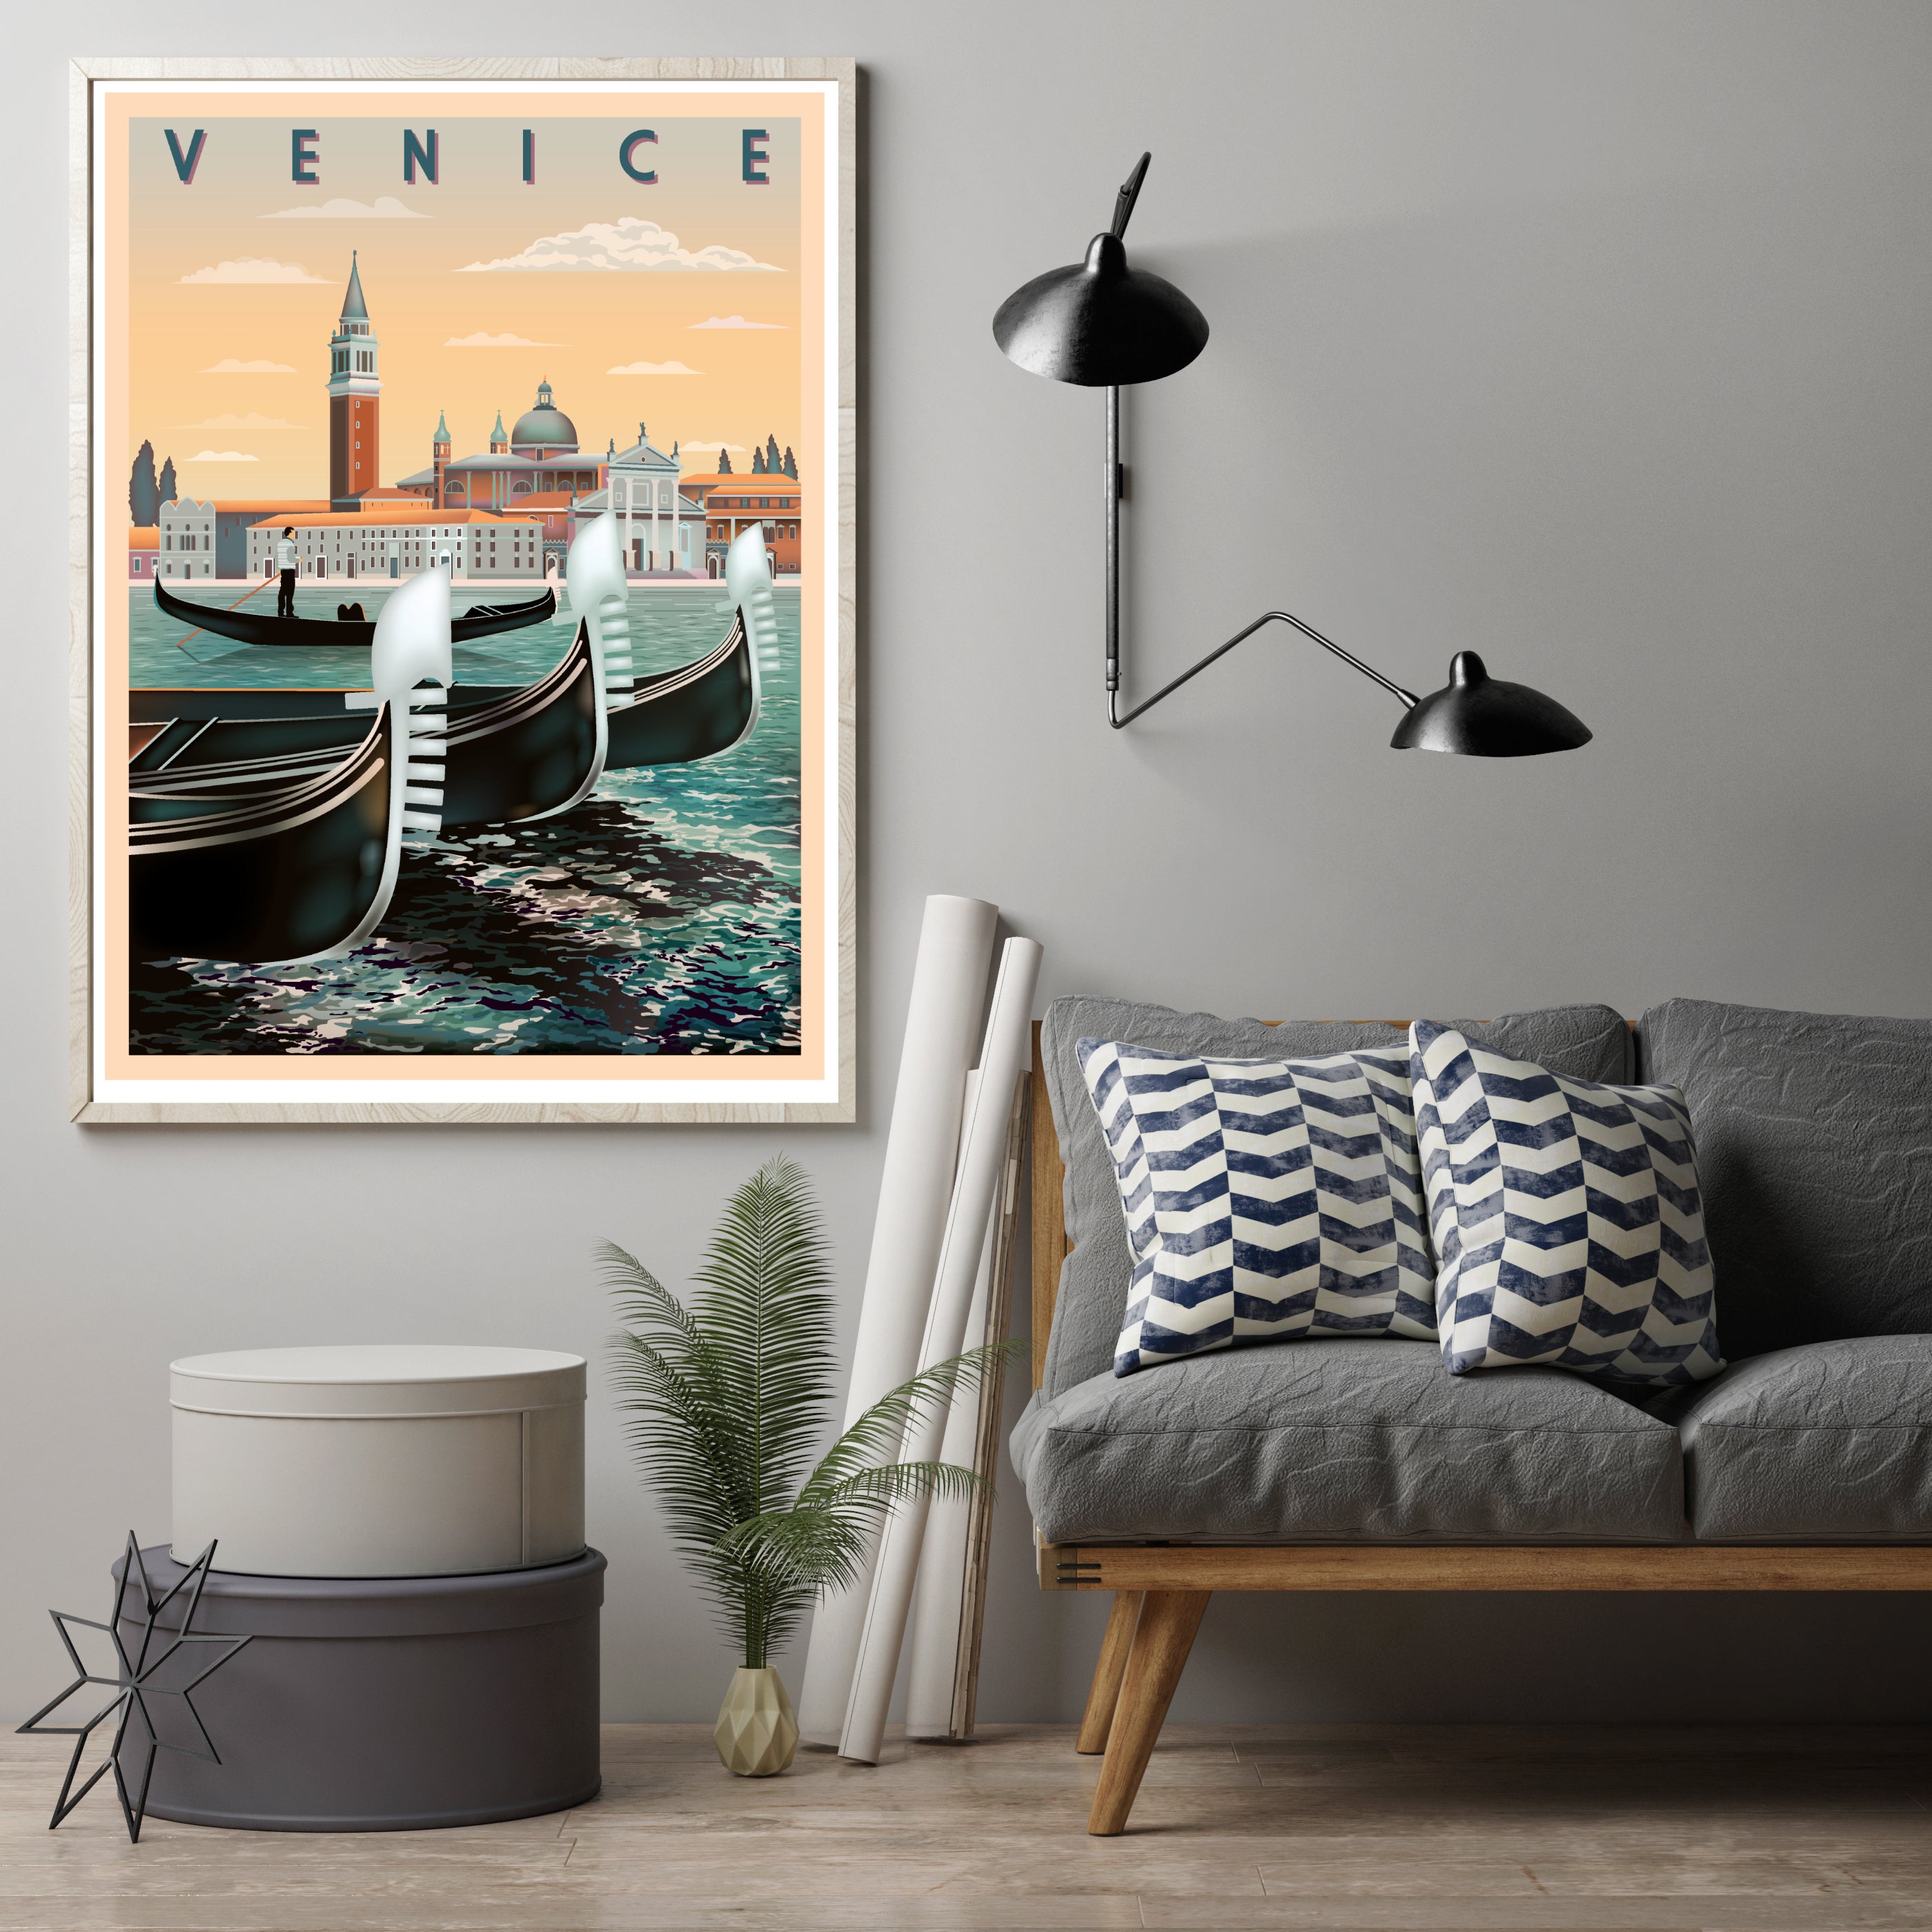 Venedig Italien / Vintage Reiseposter - reetro - feel the retro